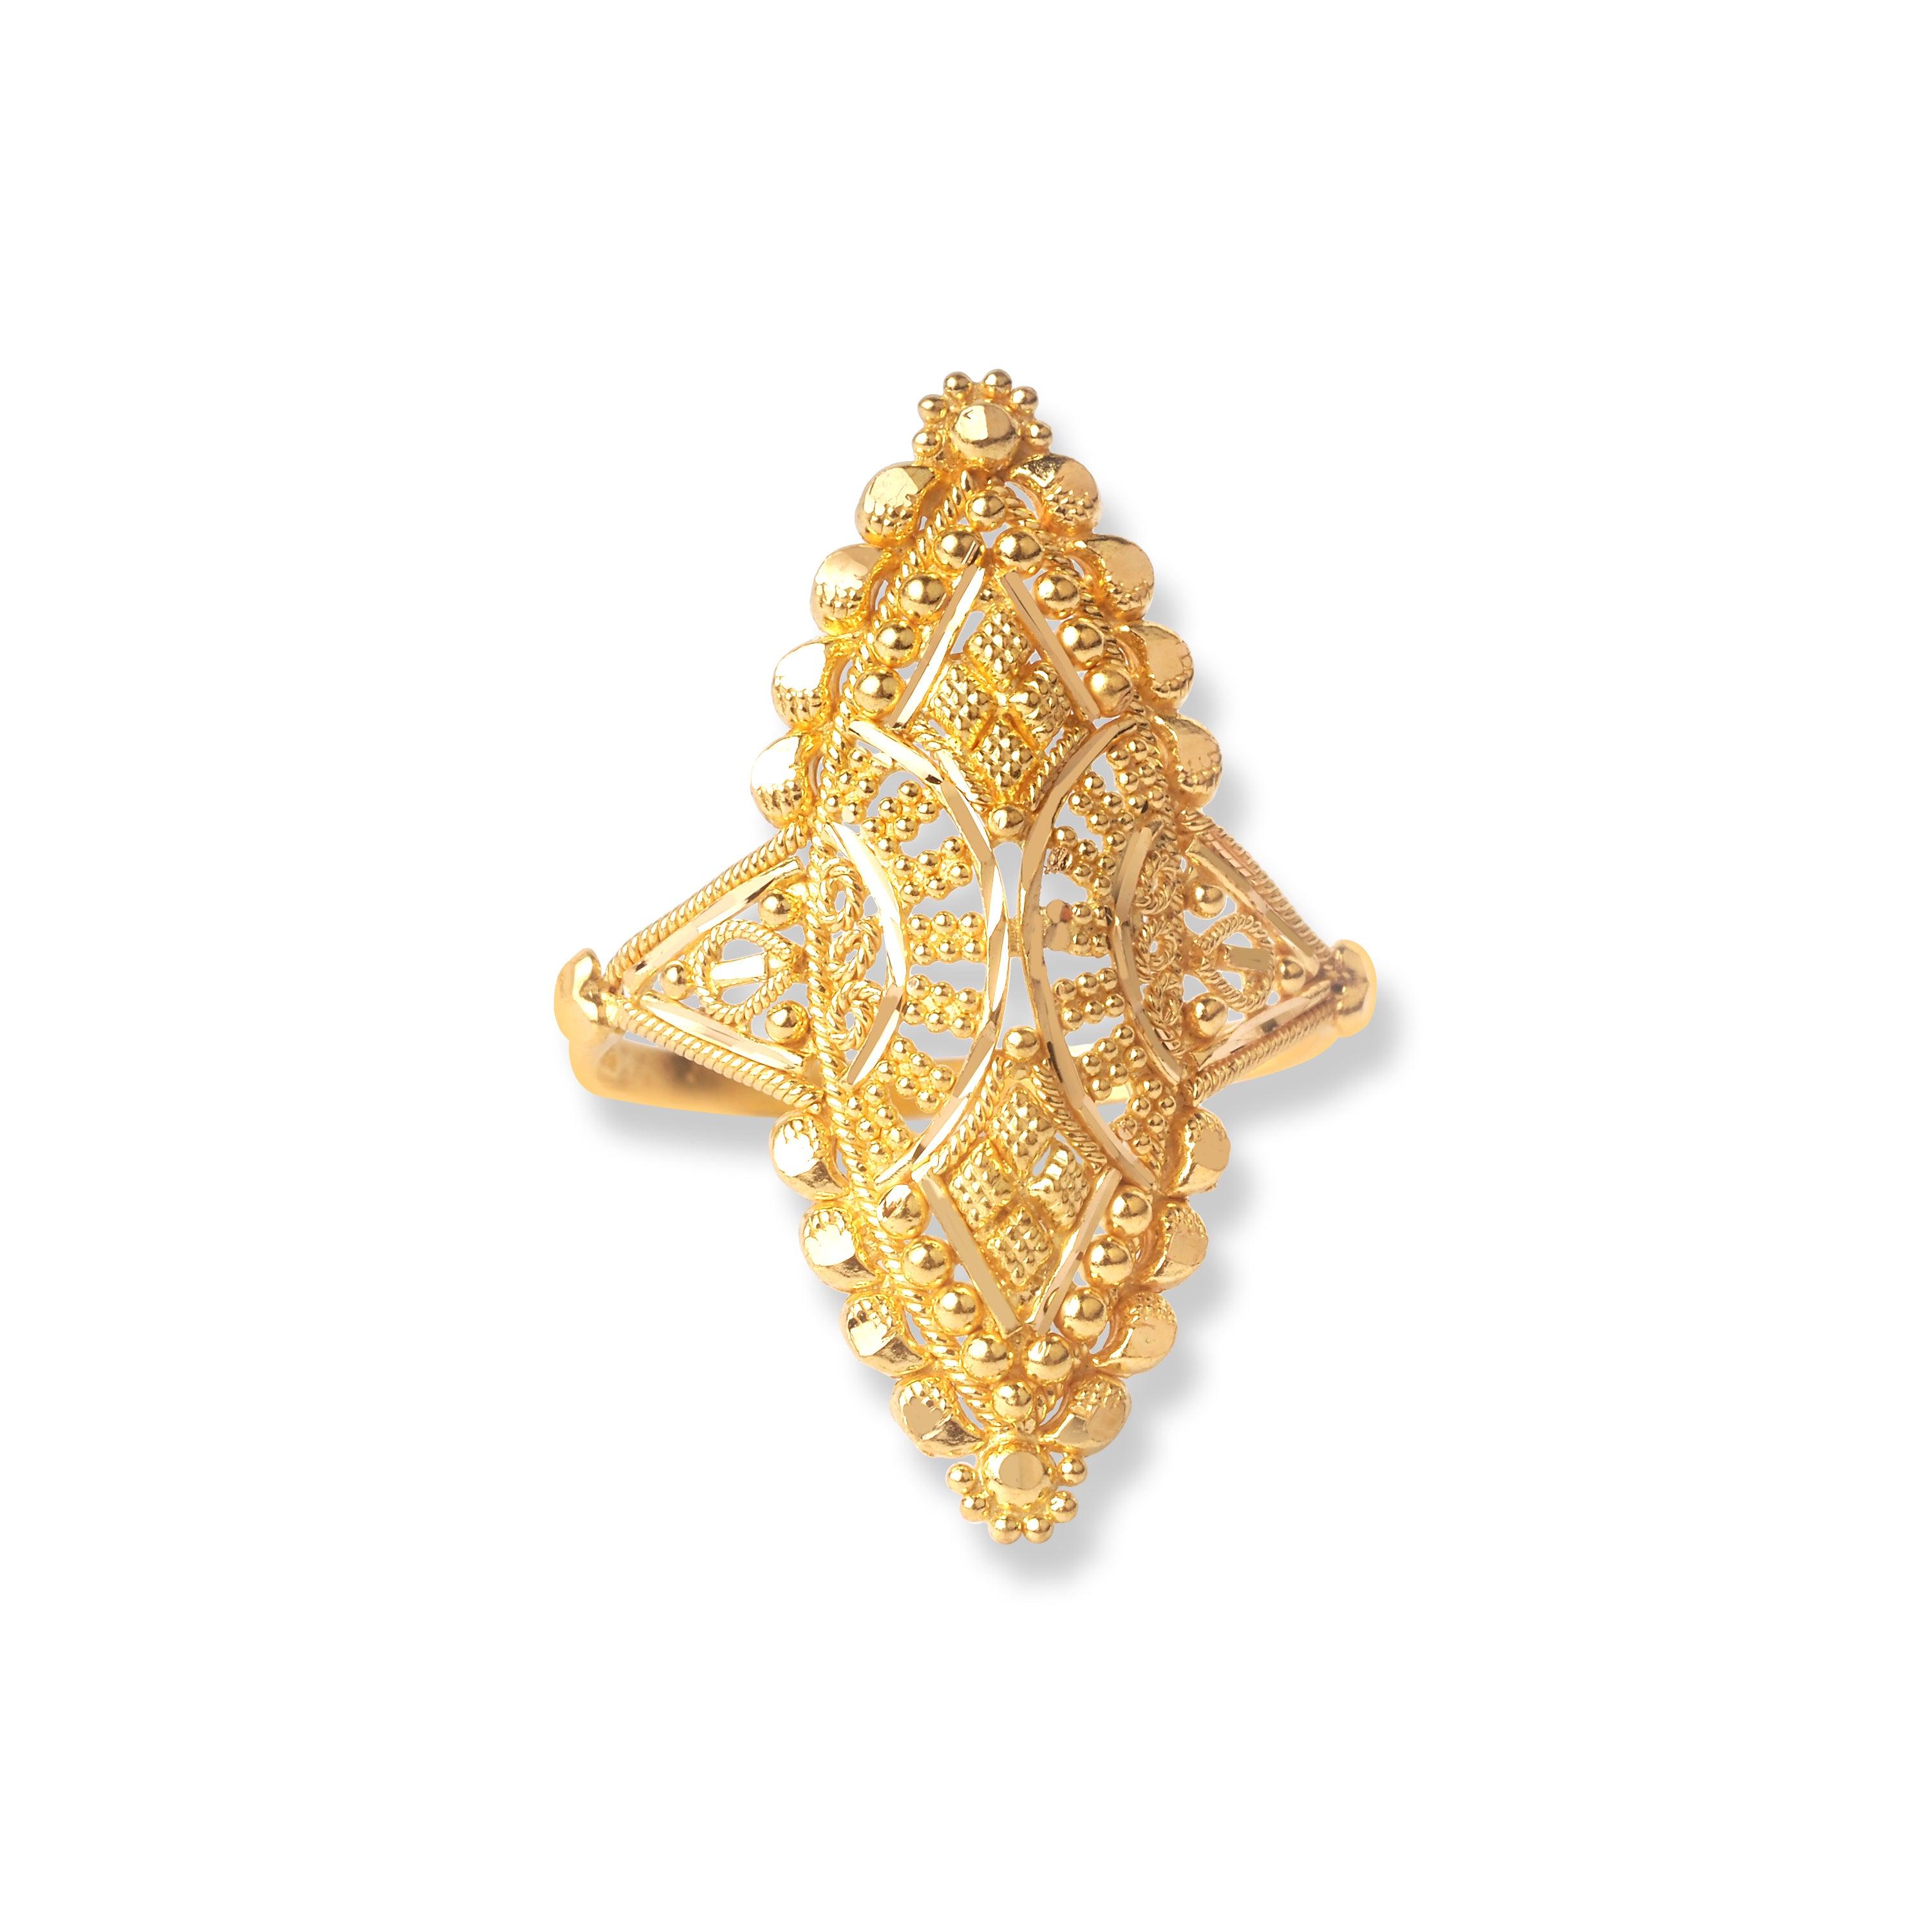 22ct Gold Filigree Ring (3.4g) LR-6566 - Minar Jewellers